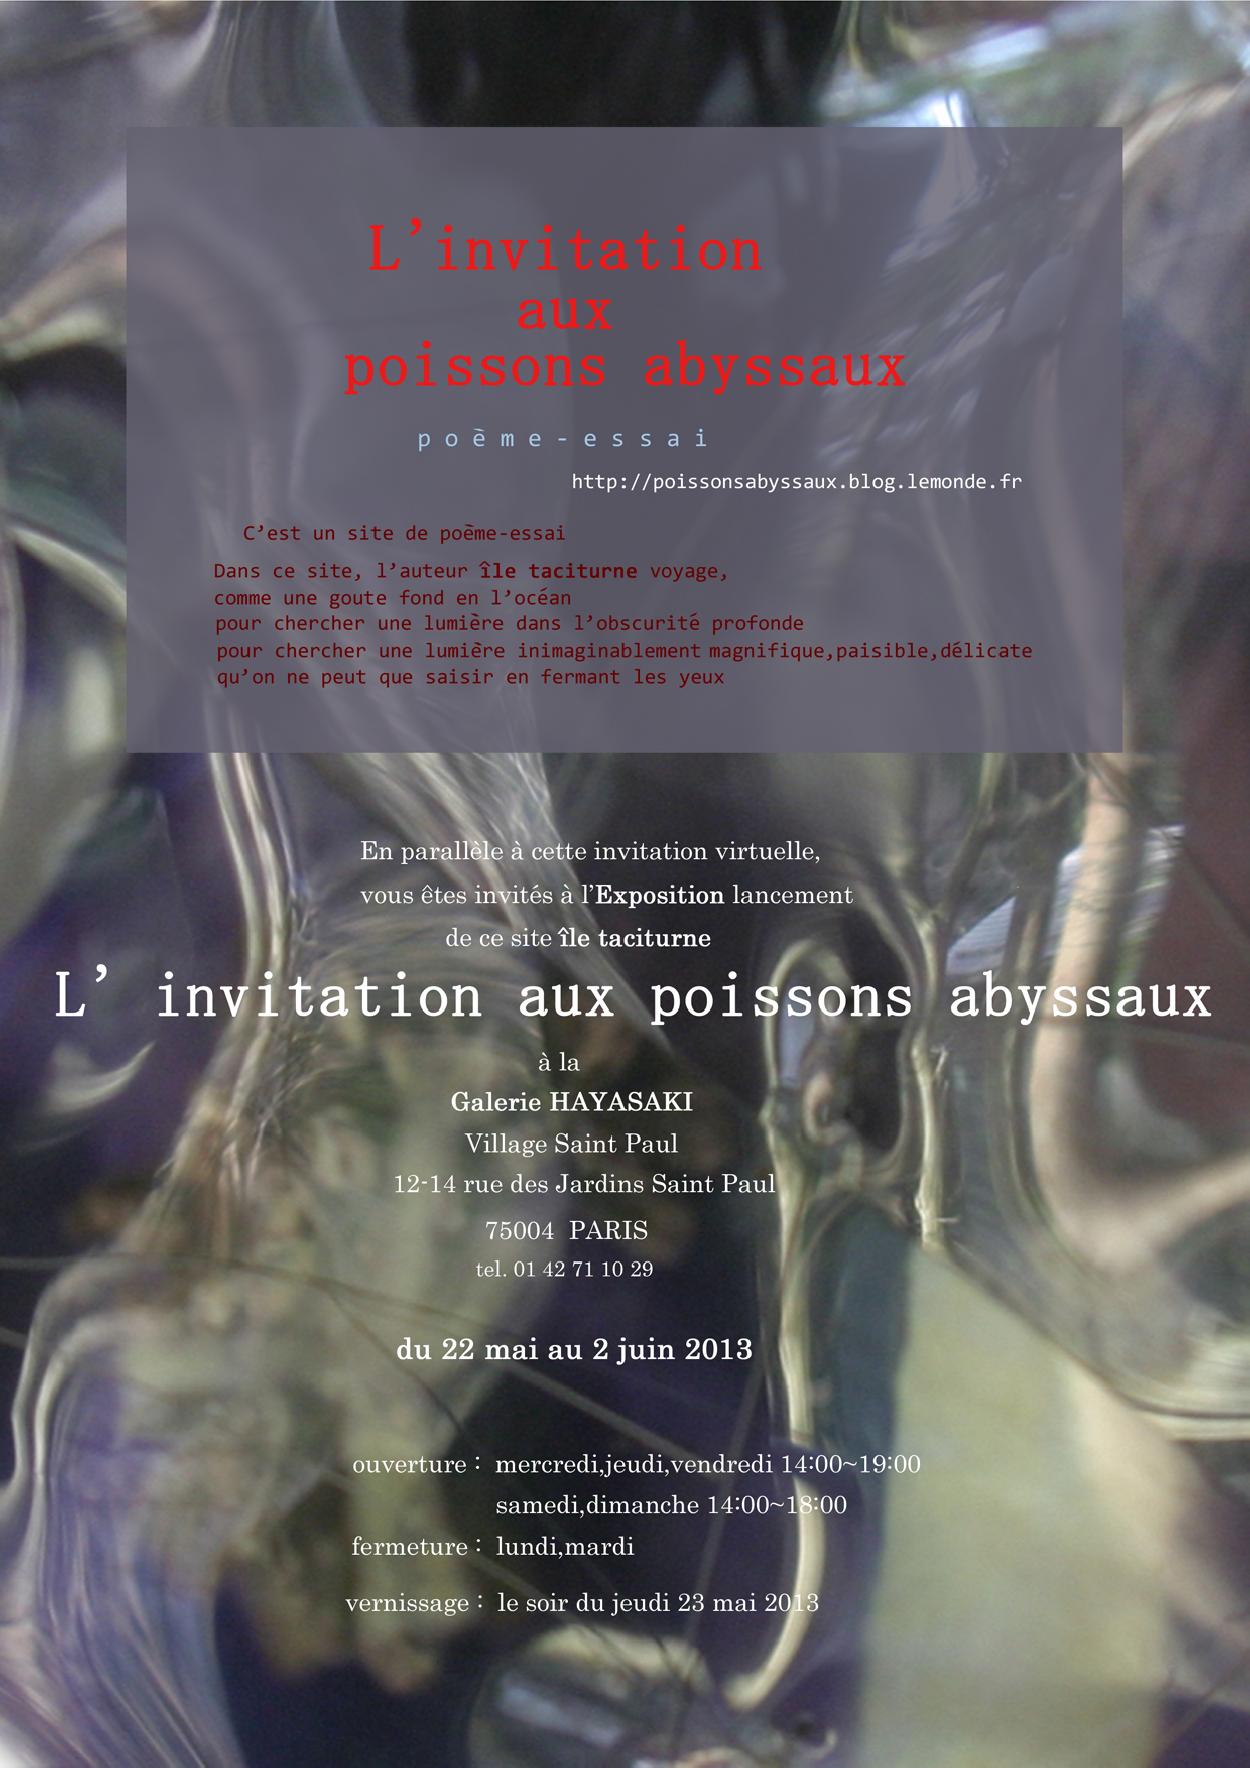 île taciturne, L'invitation aux poissons abyssaux, 22 mai - 2 june 2013